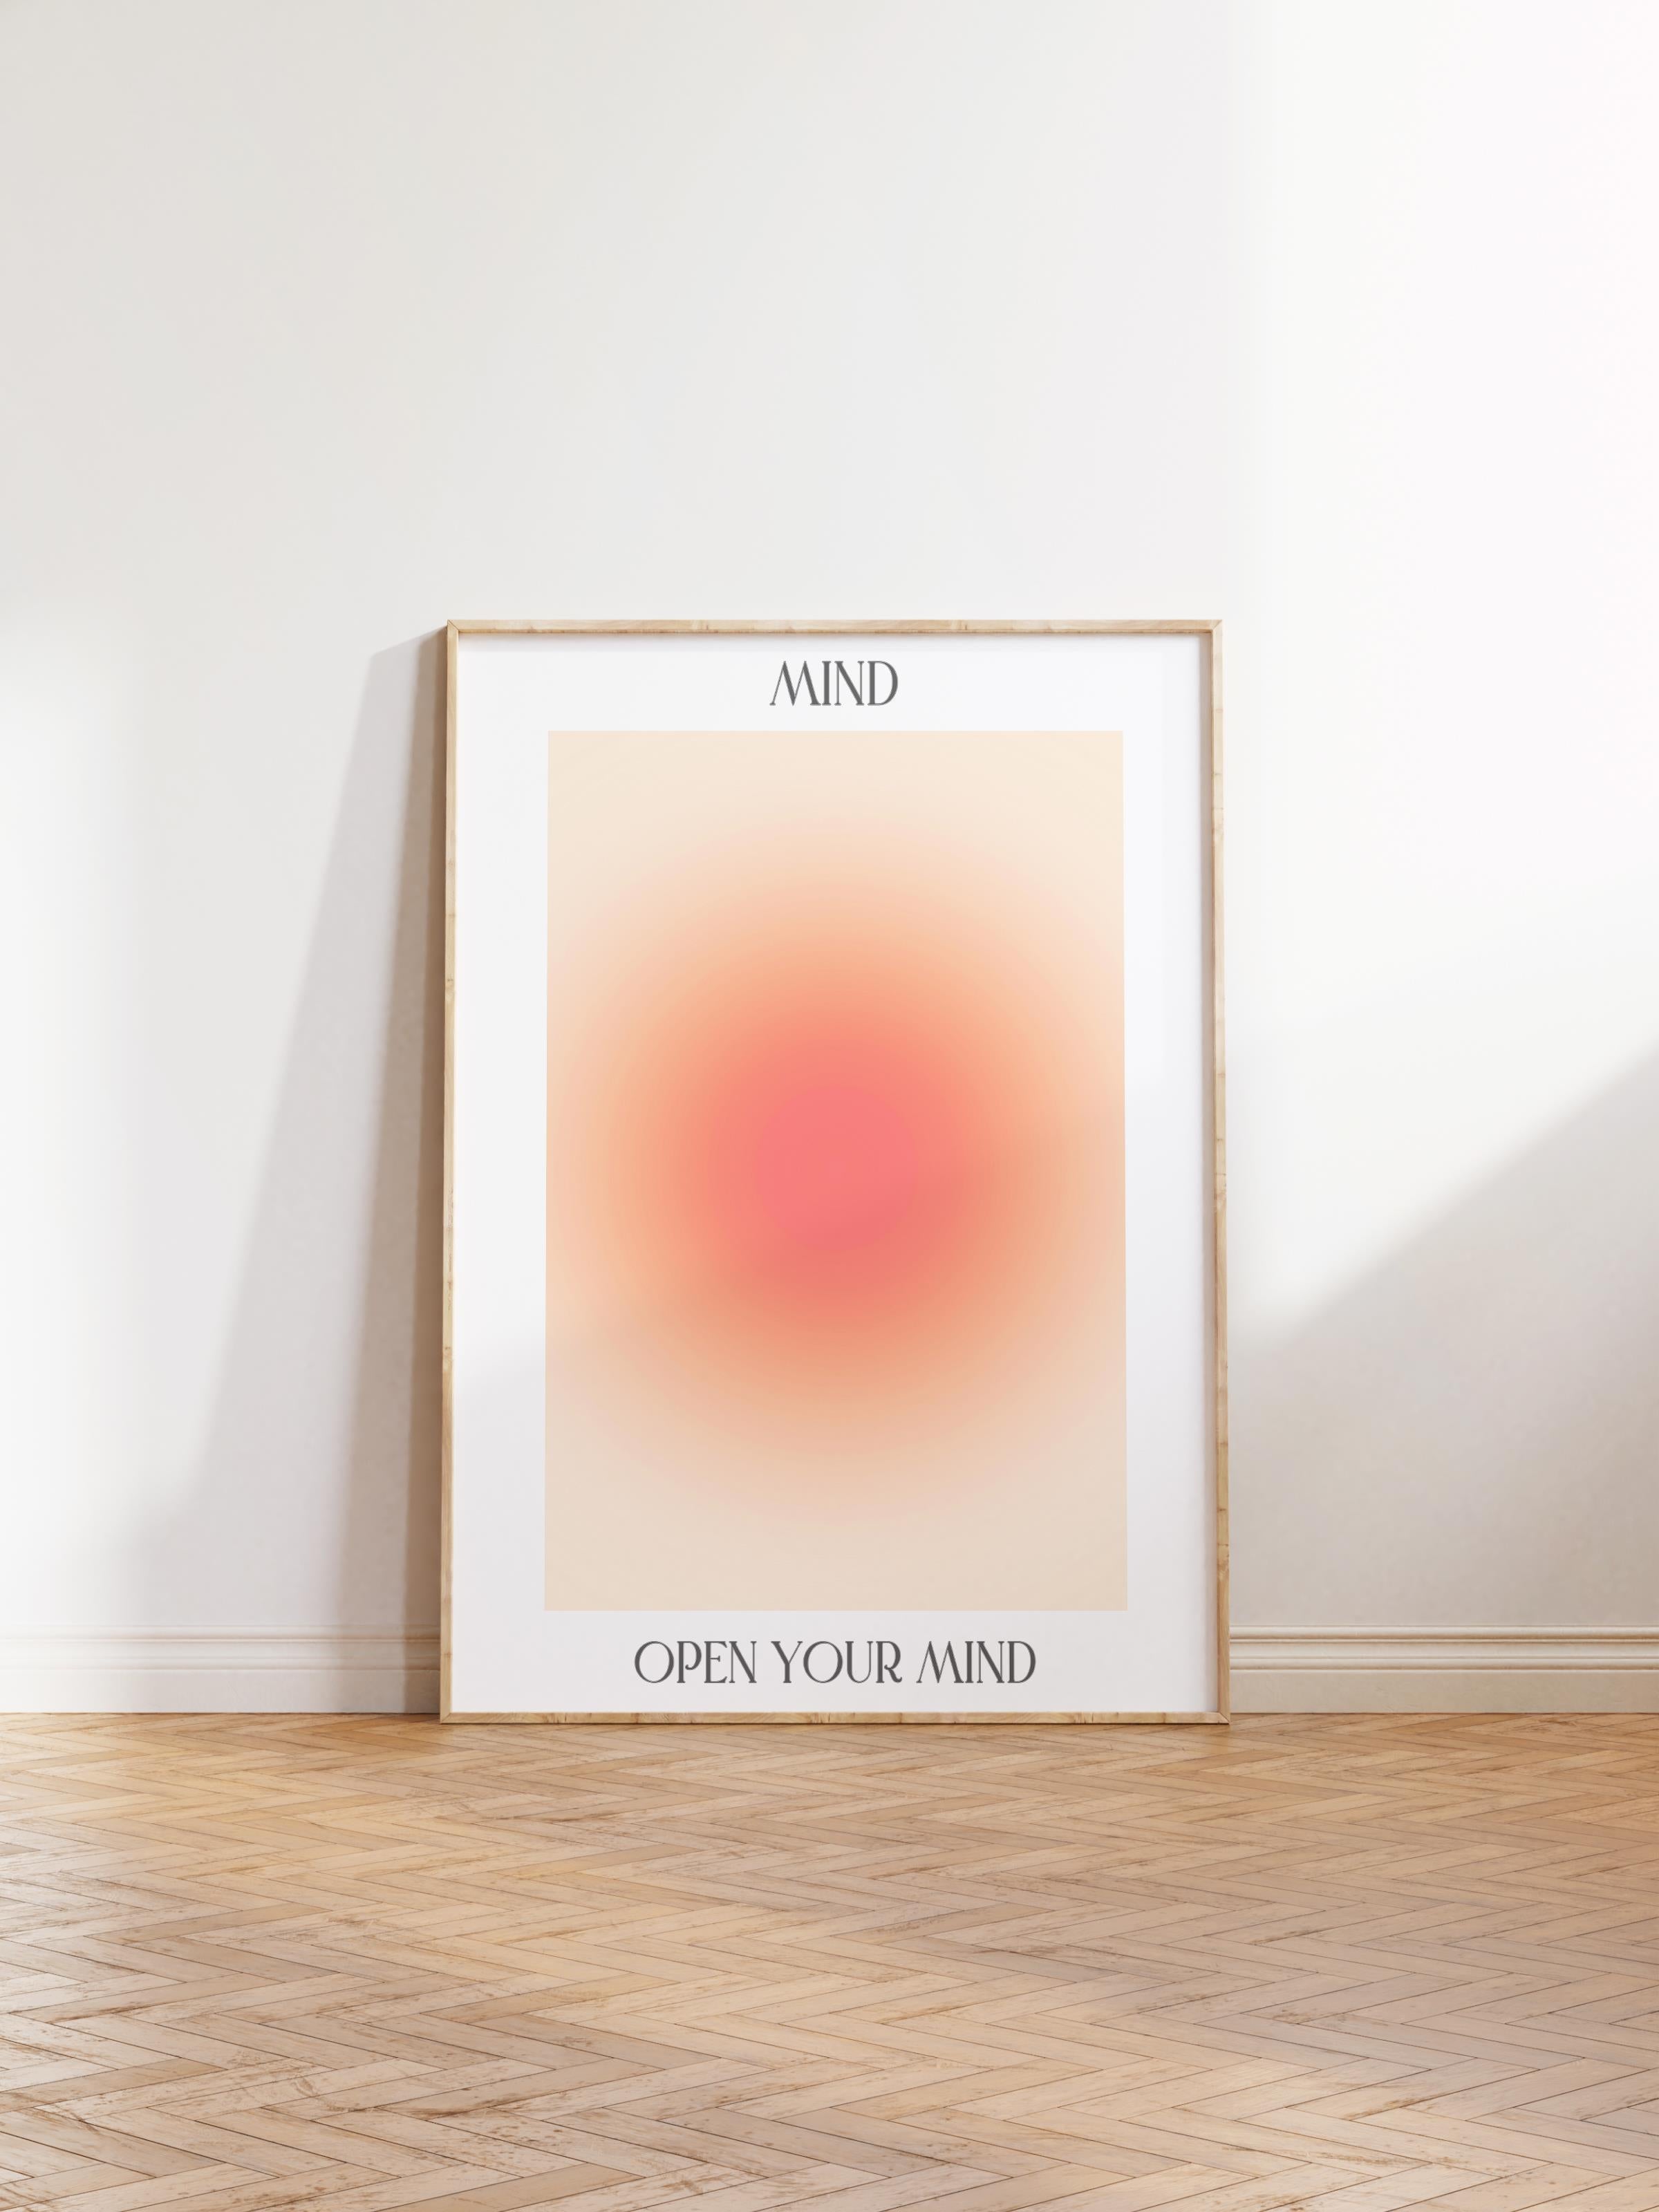 Çerçevesiz Poster, Aura Serisi NO:24 - Mind, Open Your Mind - Turuncu Daire, Melek Numaraları